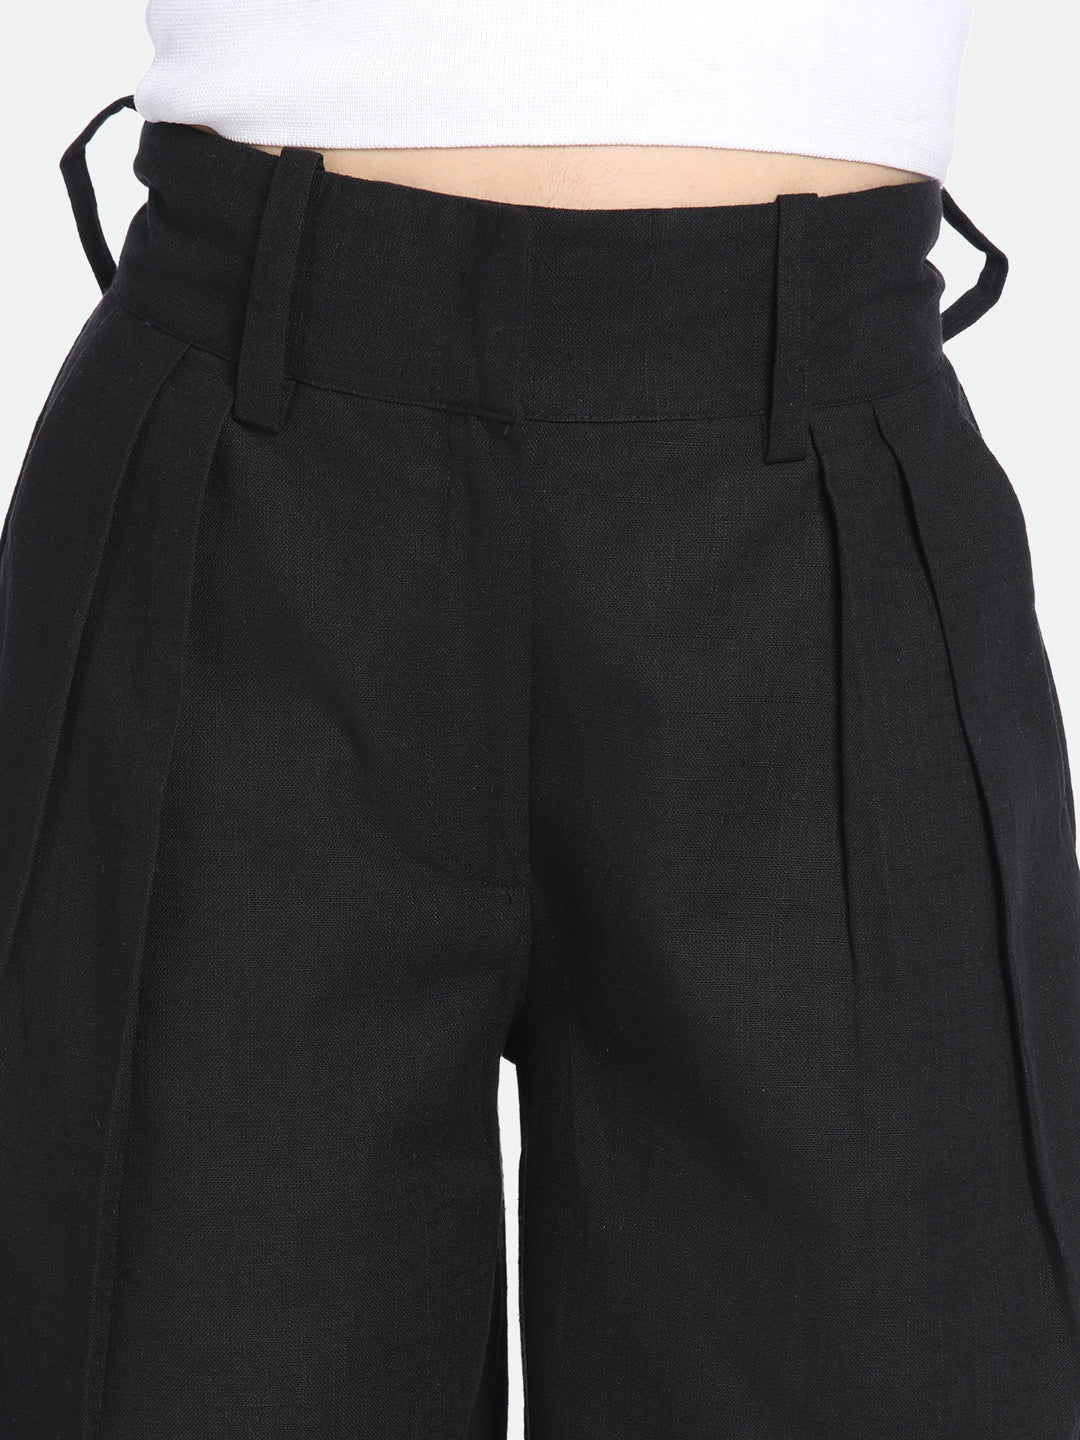 DL Woman Black Cotton Trousers